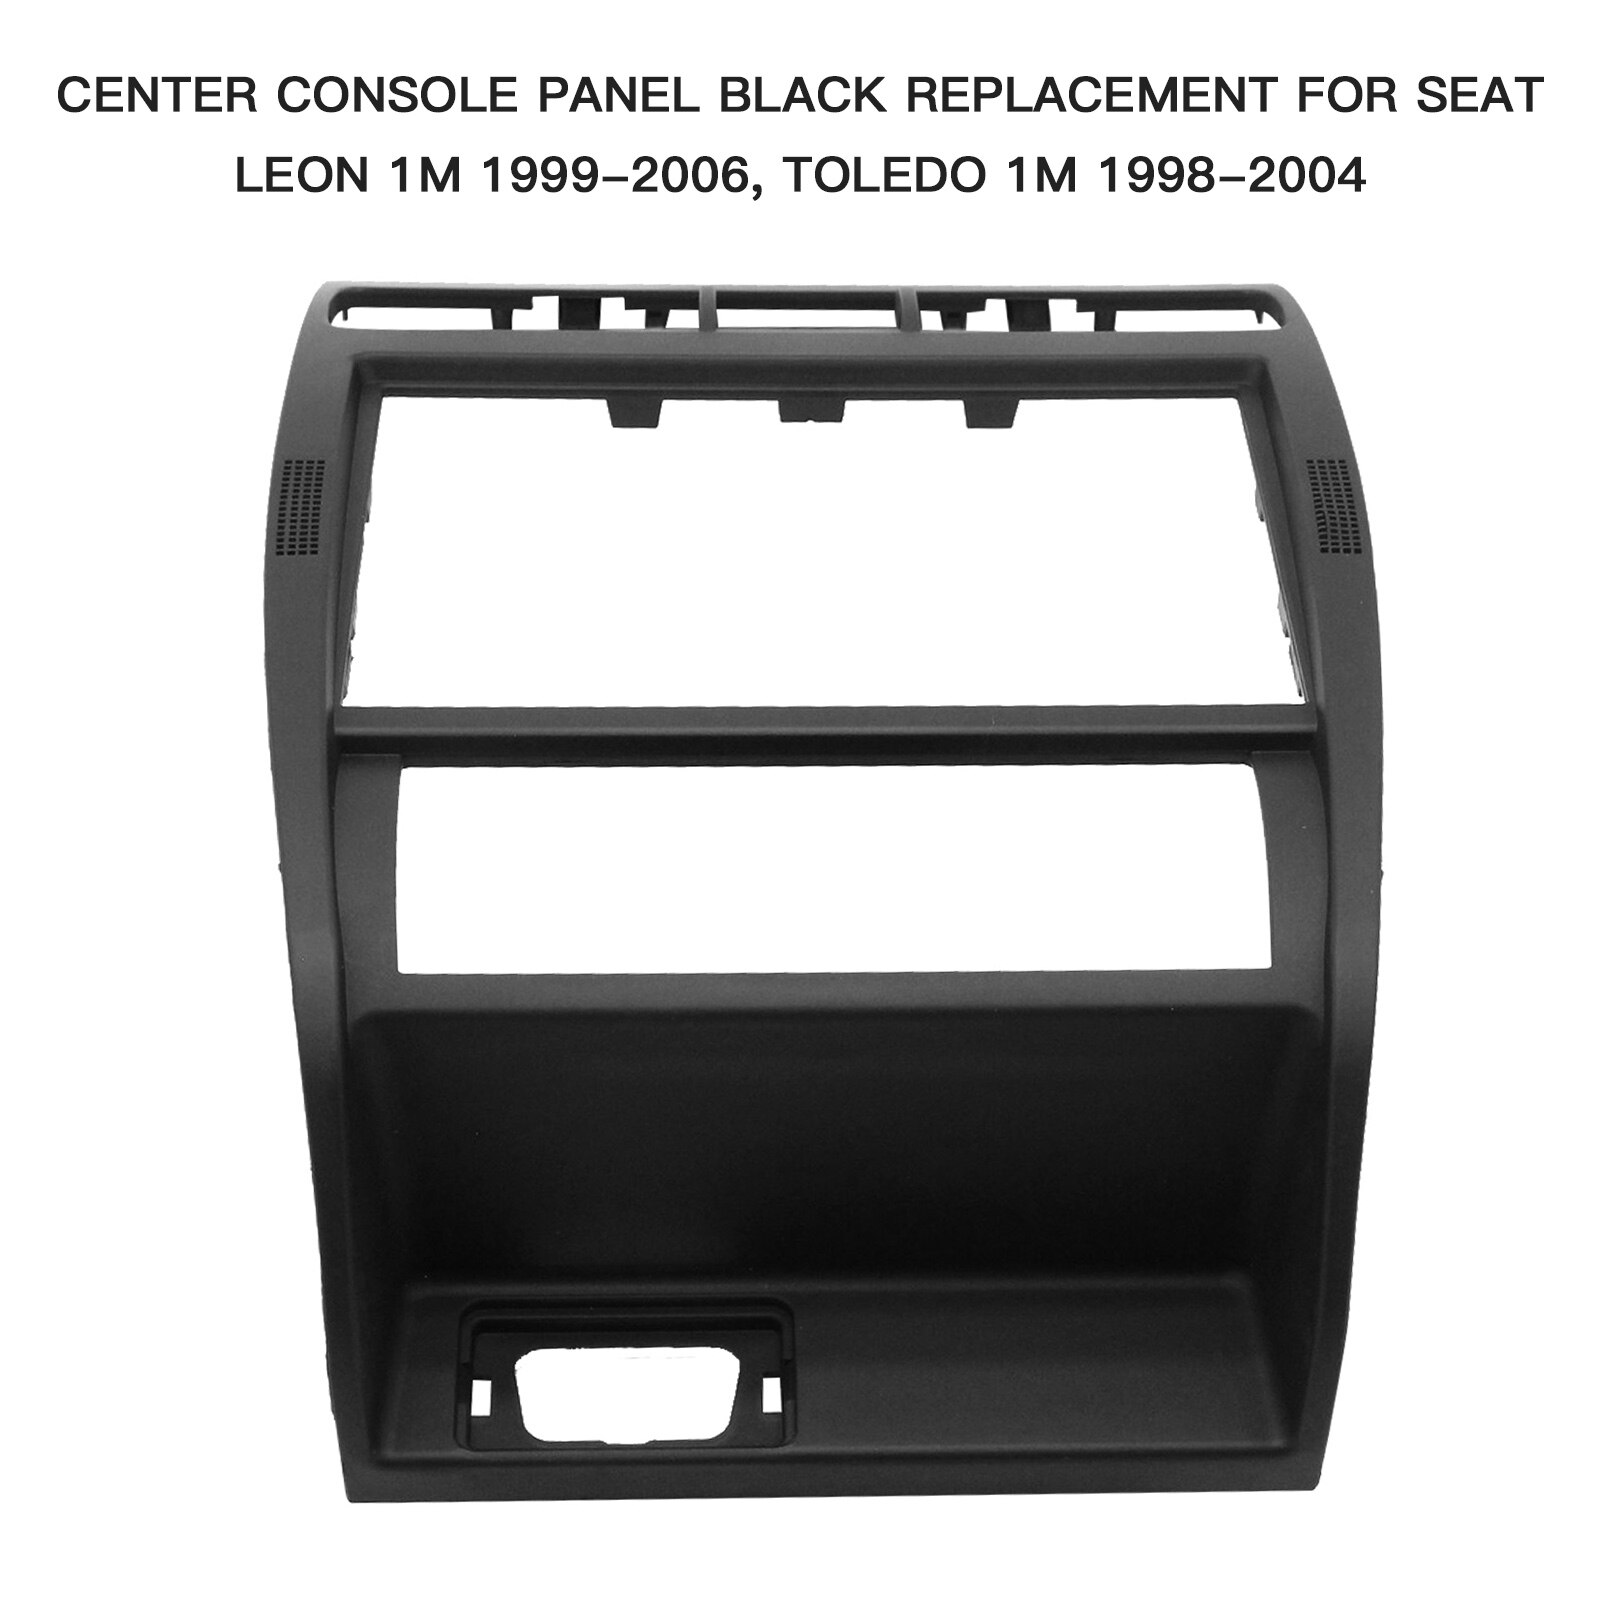 Center Console Panel Black Vervanging Voor Seat Leon 1M 1999-2006, Toledo 1M 1998-2004